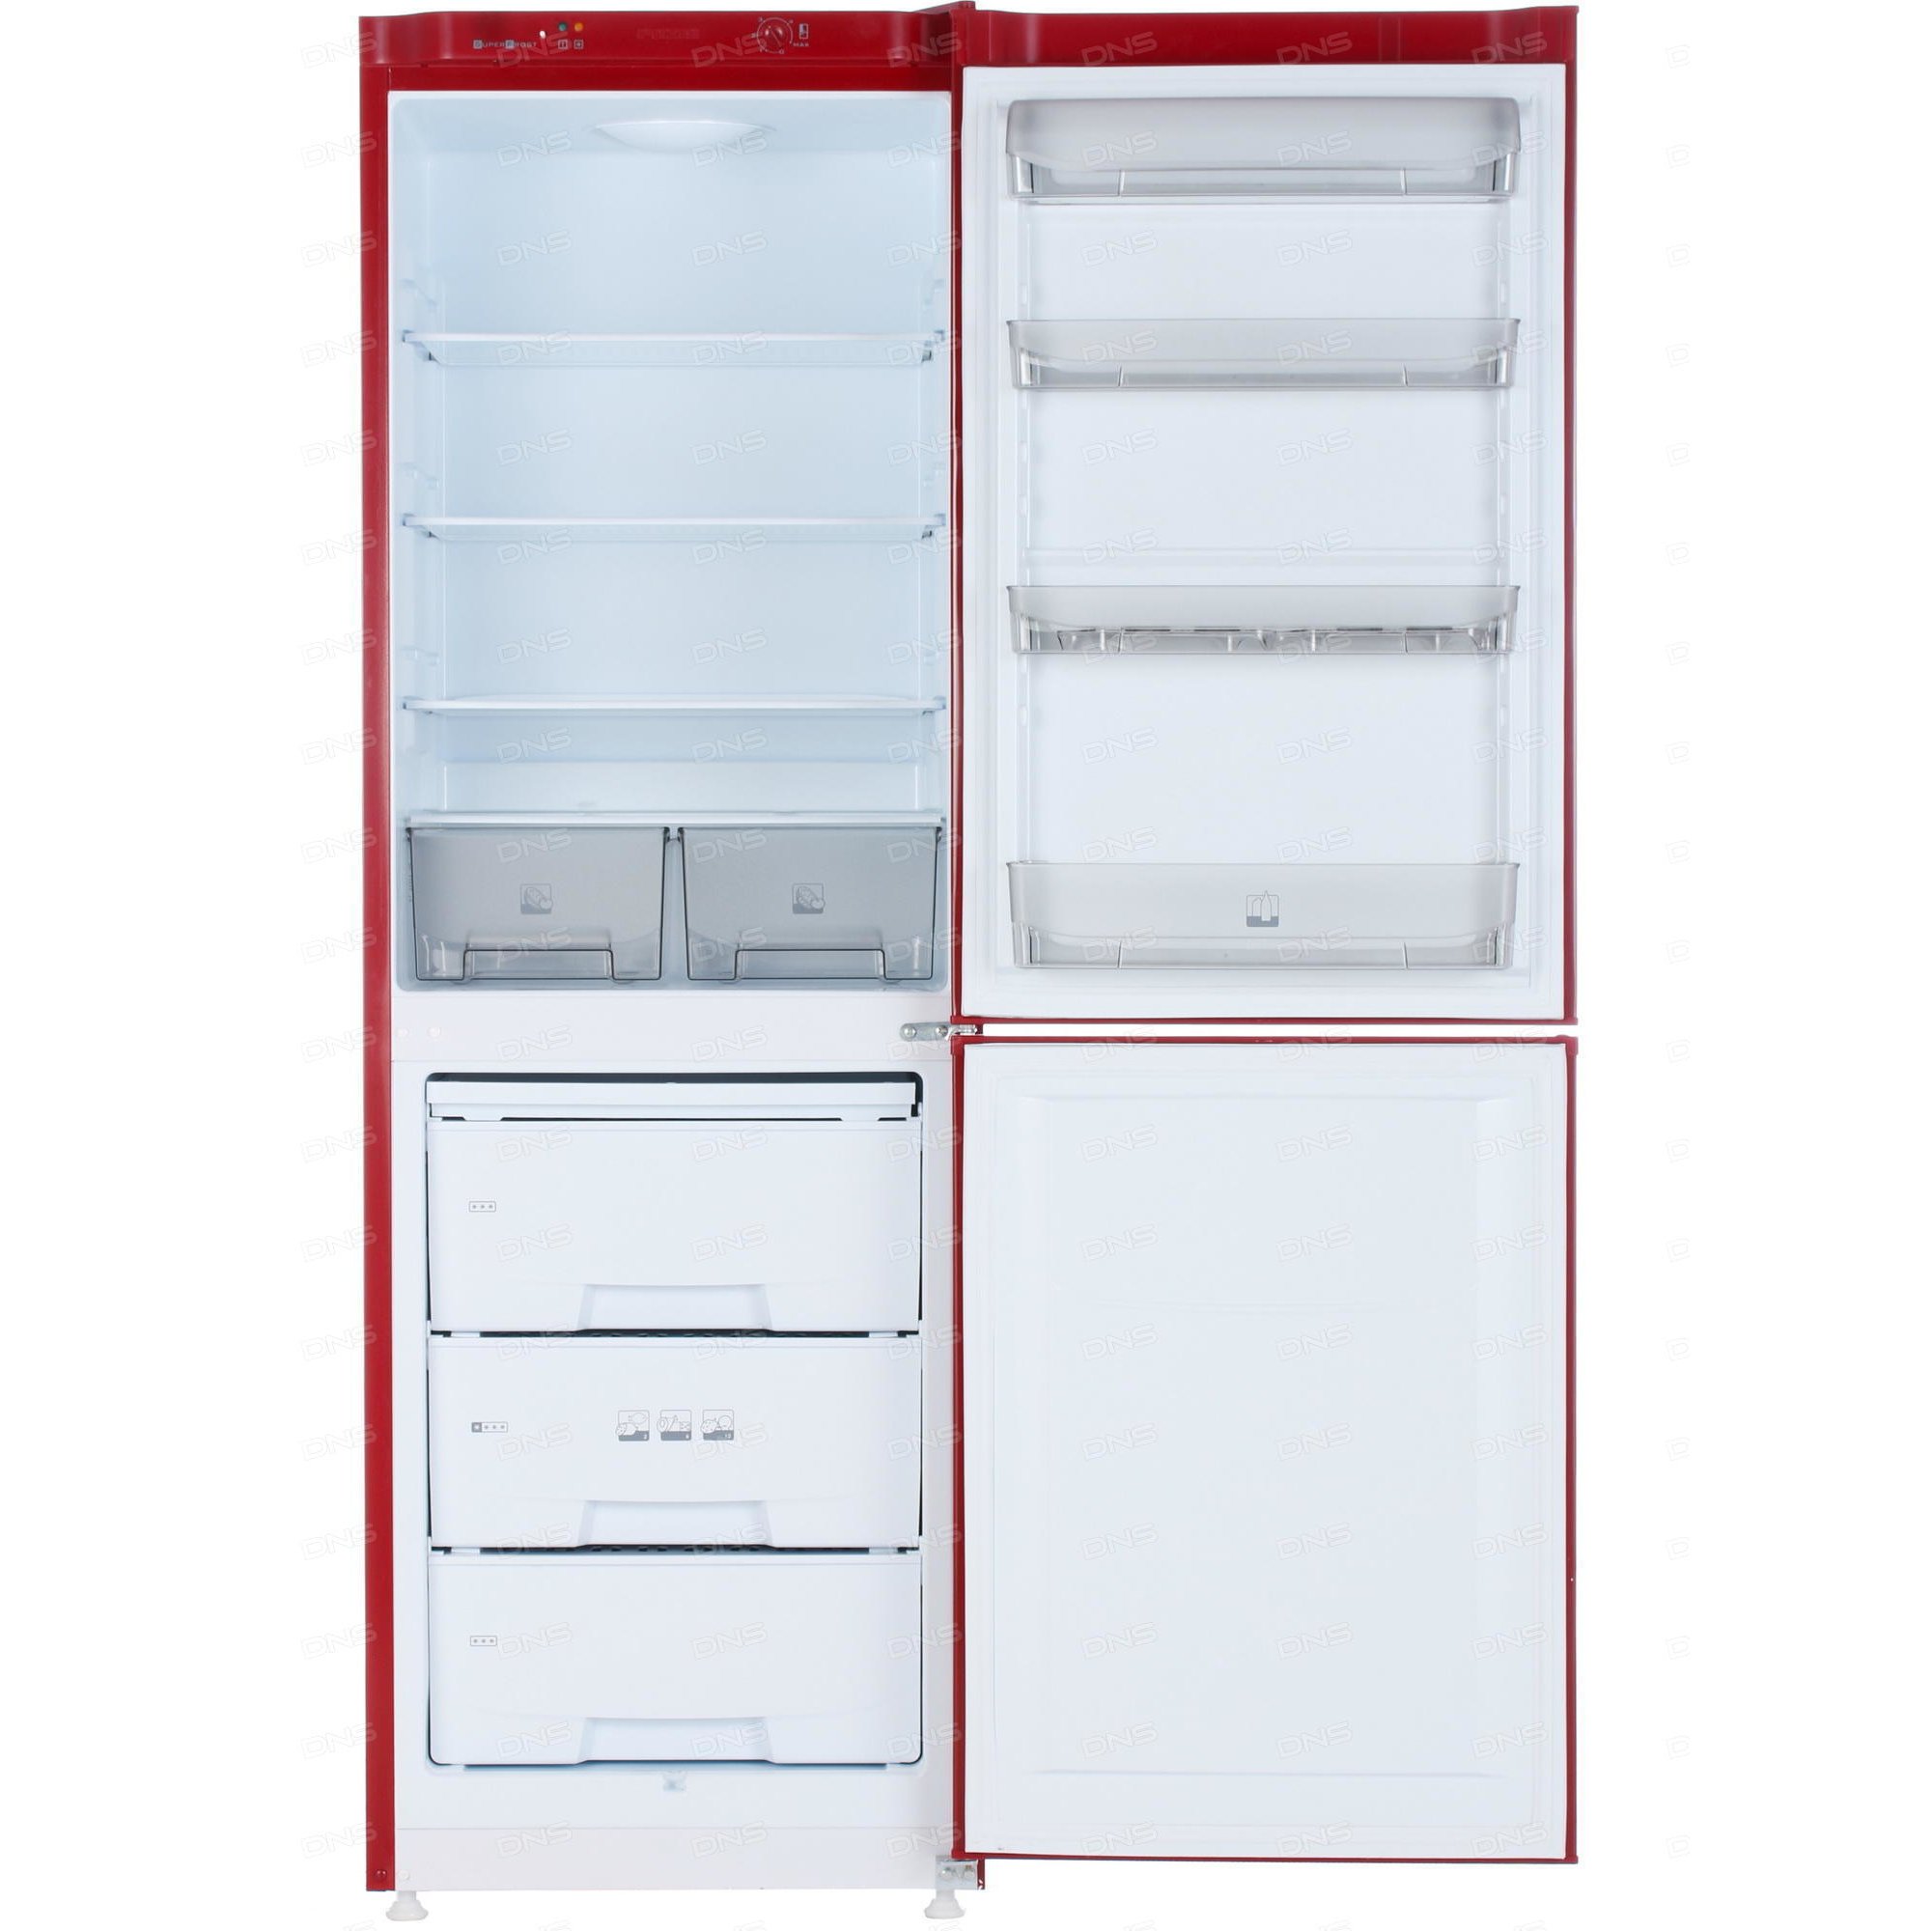 Pozis 170. Холодильник Позис rk139. Холодильник Pozis RK-139. Холодильник Pozis RK-102. Холодильник Pozis RK-139 R, красный.